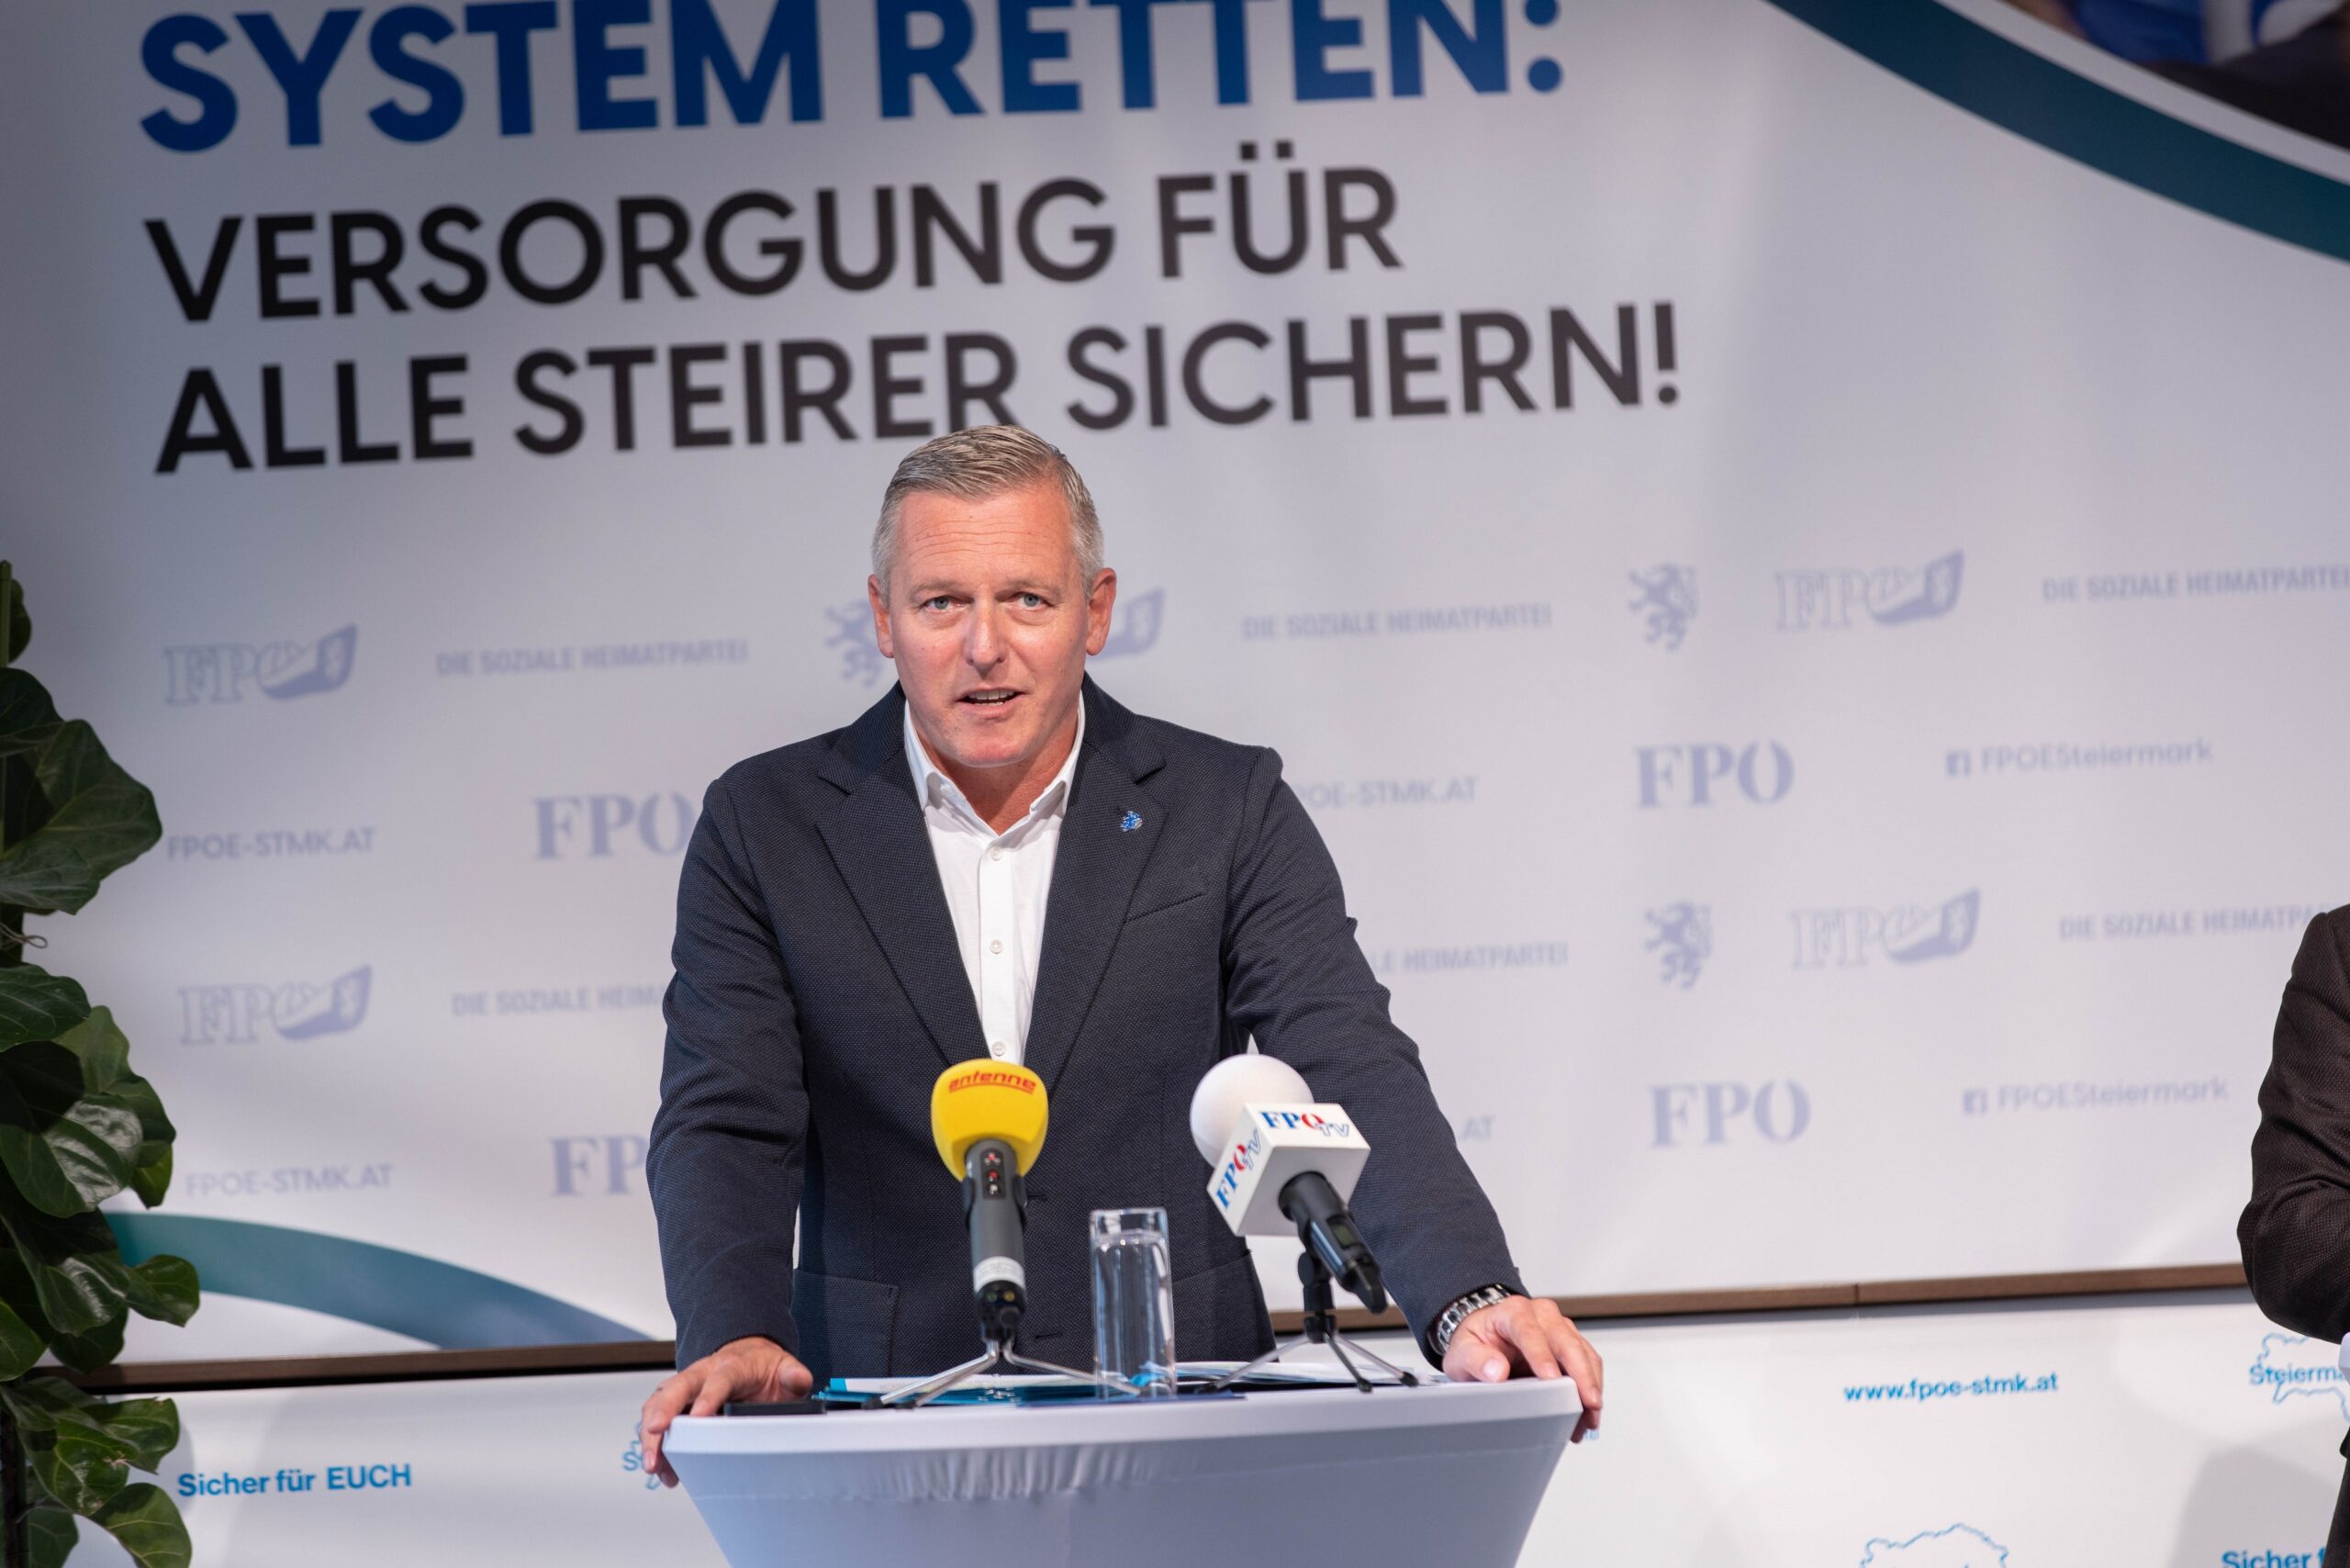 FPÖ Steiermark: „Gesundheitssystem retten – Versorgung für alle Steirer sichern!“